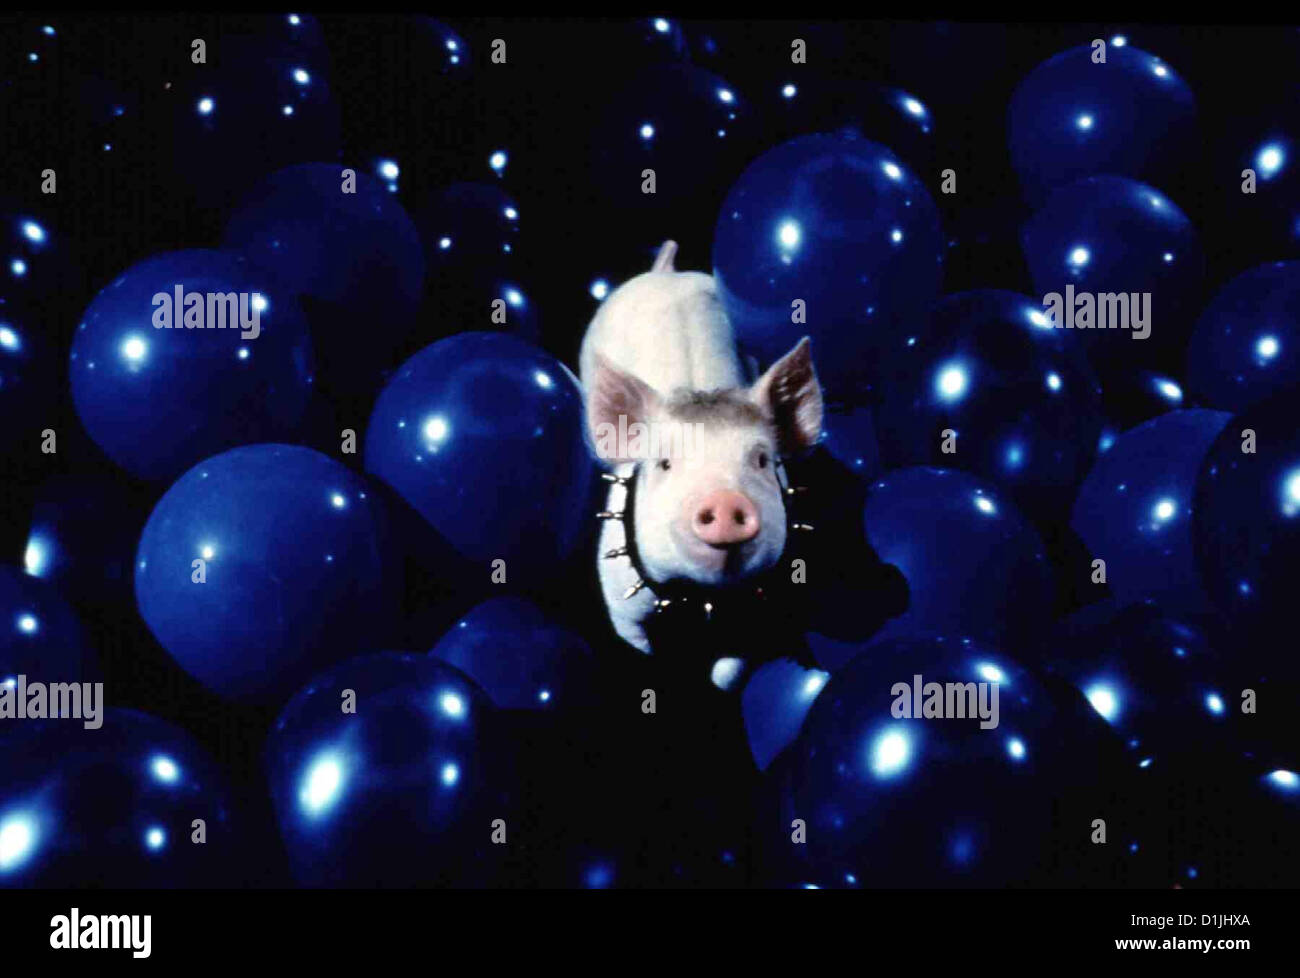 Schweinchen Babe In Der Grossen Stadt   Babe - Pig In The City   Babe in Szene *** Local Caption *** 1998  UIP Stock Photo